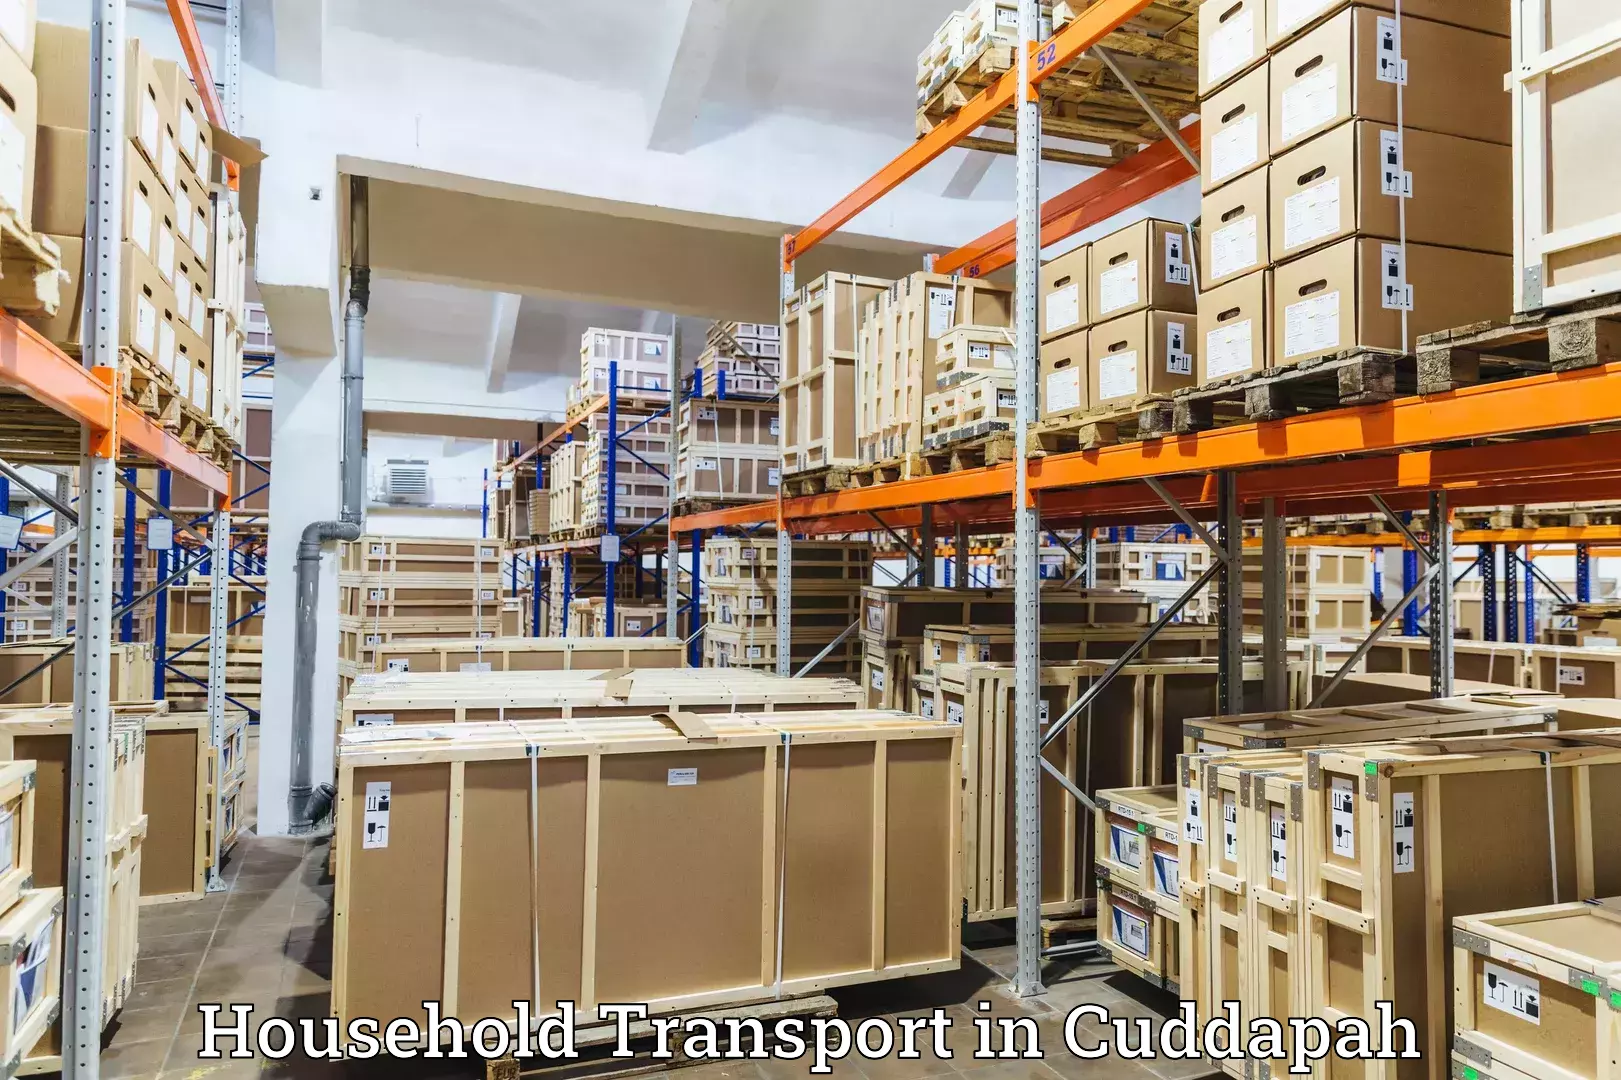 Furniture transport experts in Cuddapah